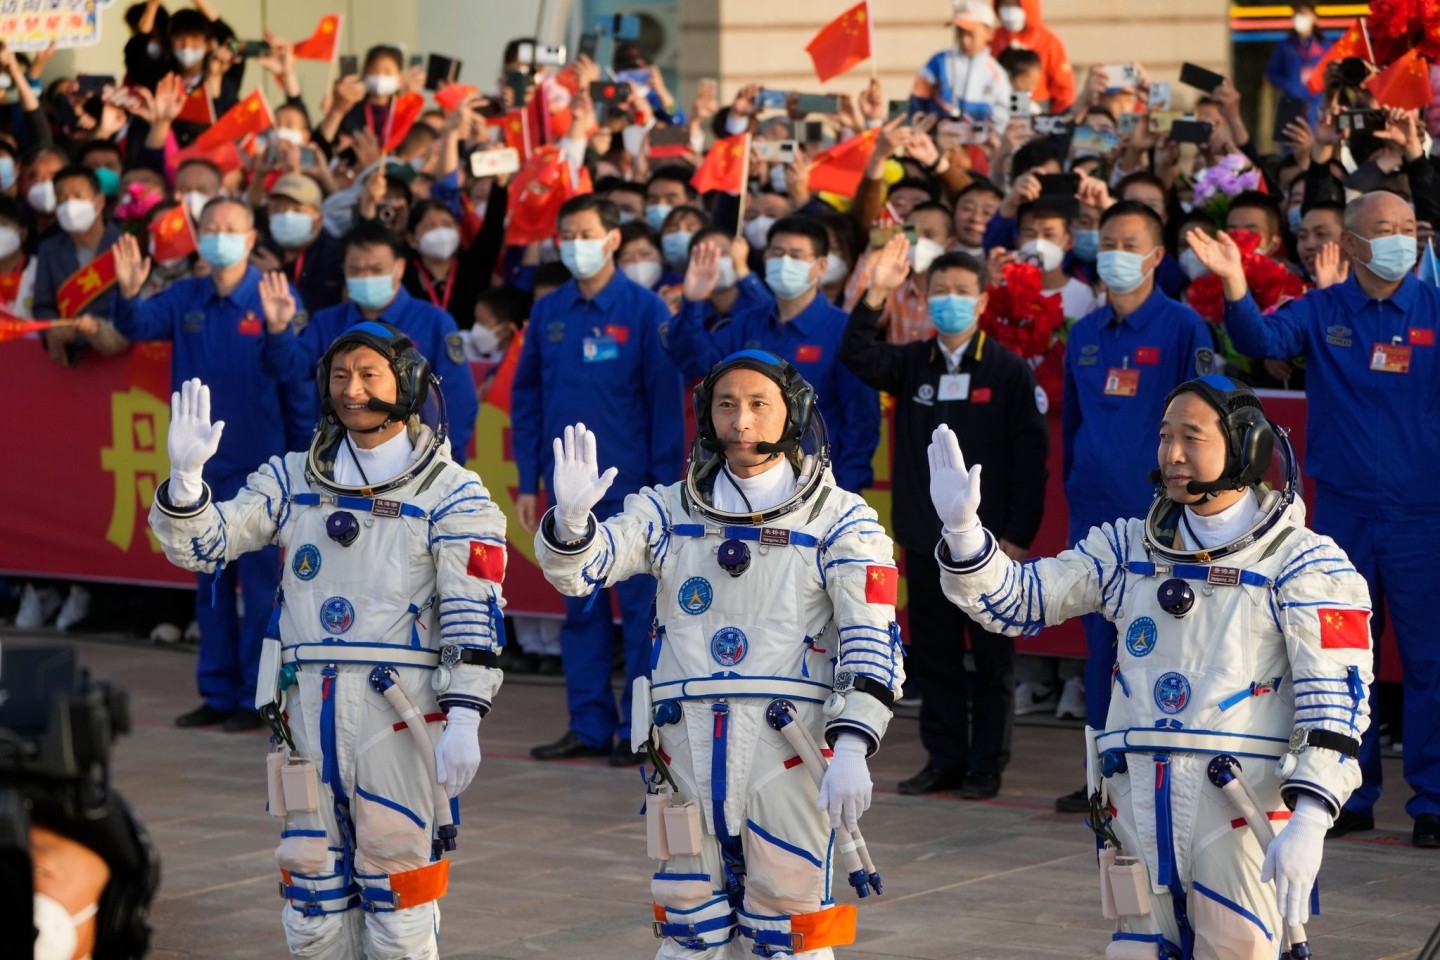 Die Astronauten der Shenzhou-16-Mission winken bei der Abschiedszeremonie vor ihrer bemannten Weltraummission. Schickt China schon bald sein erstes wiederverwendbares Raumschiff ins All?